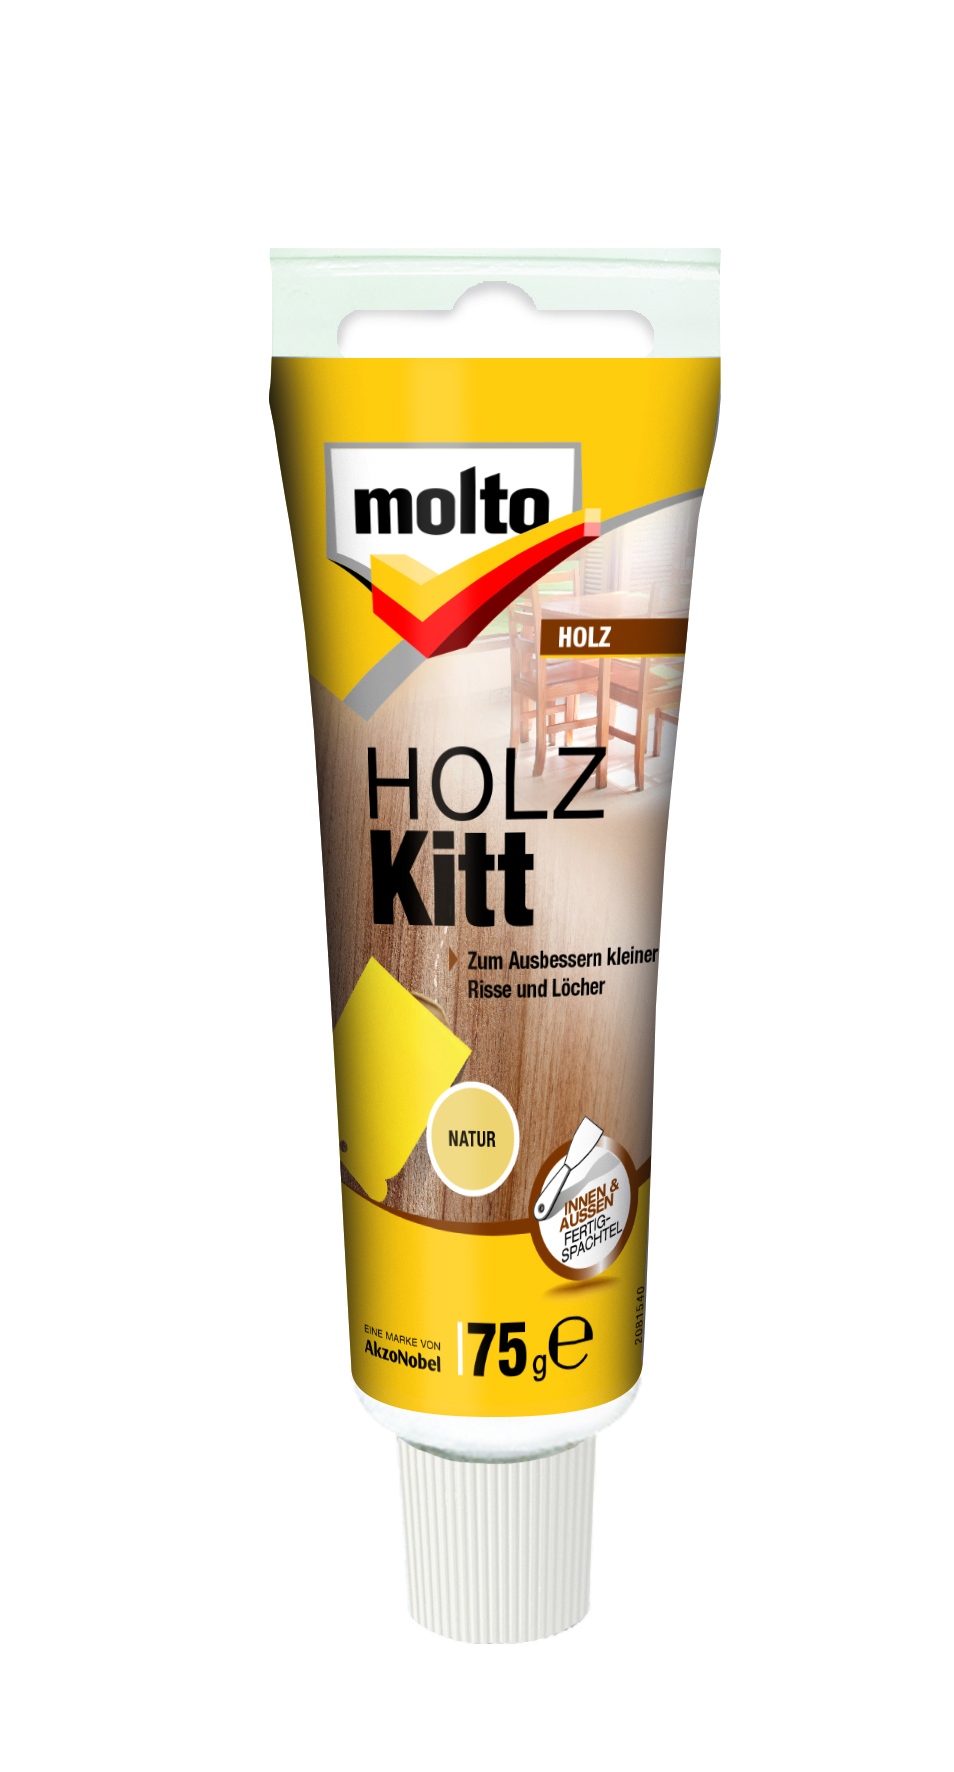 MOLTO HOLZ-KITT MAHAGONI 75 G